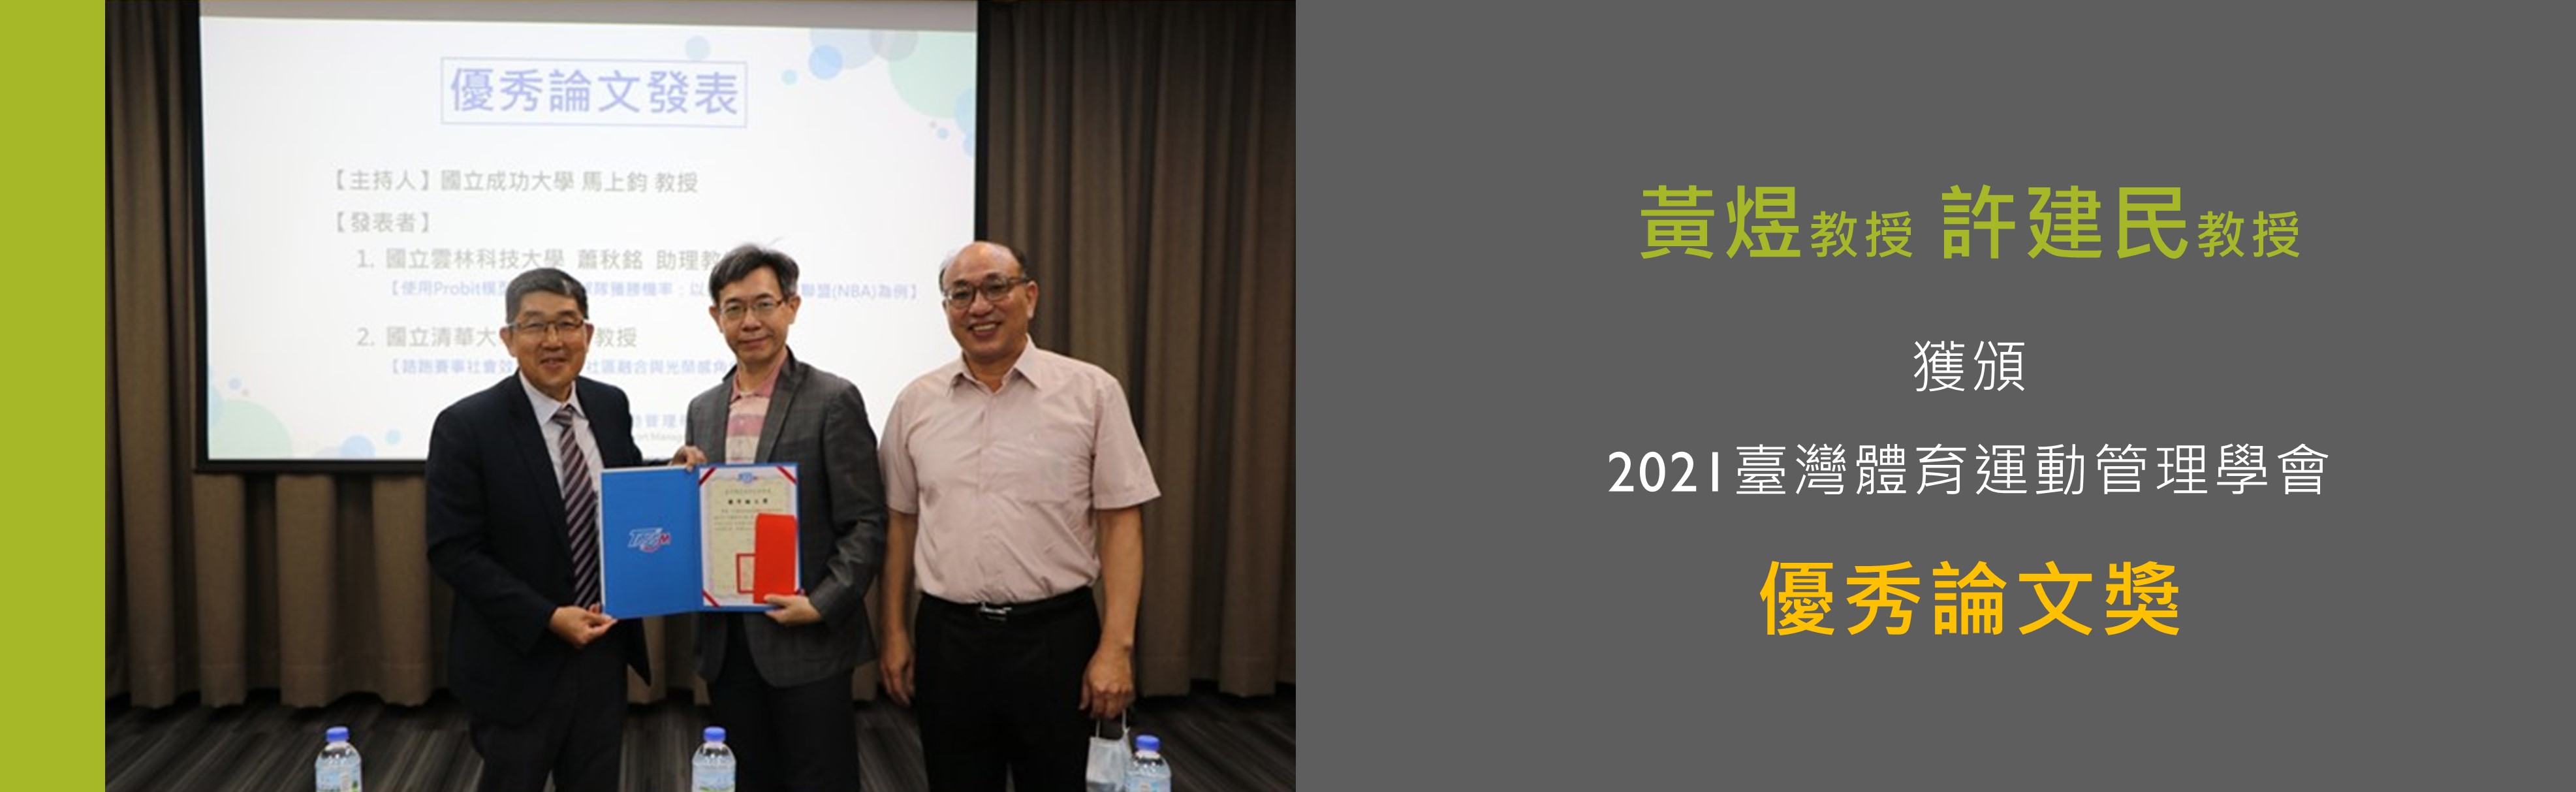 2021臺灣體育運動管理學會優秀論文獎